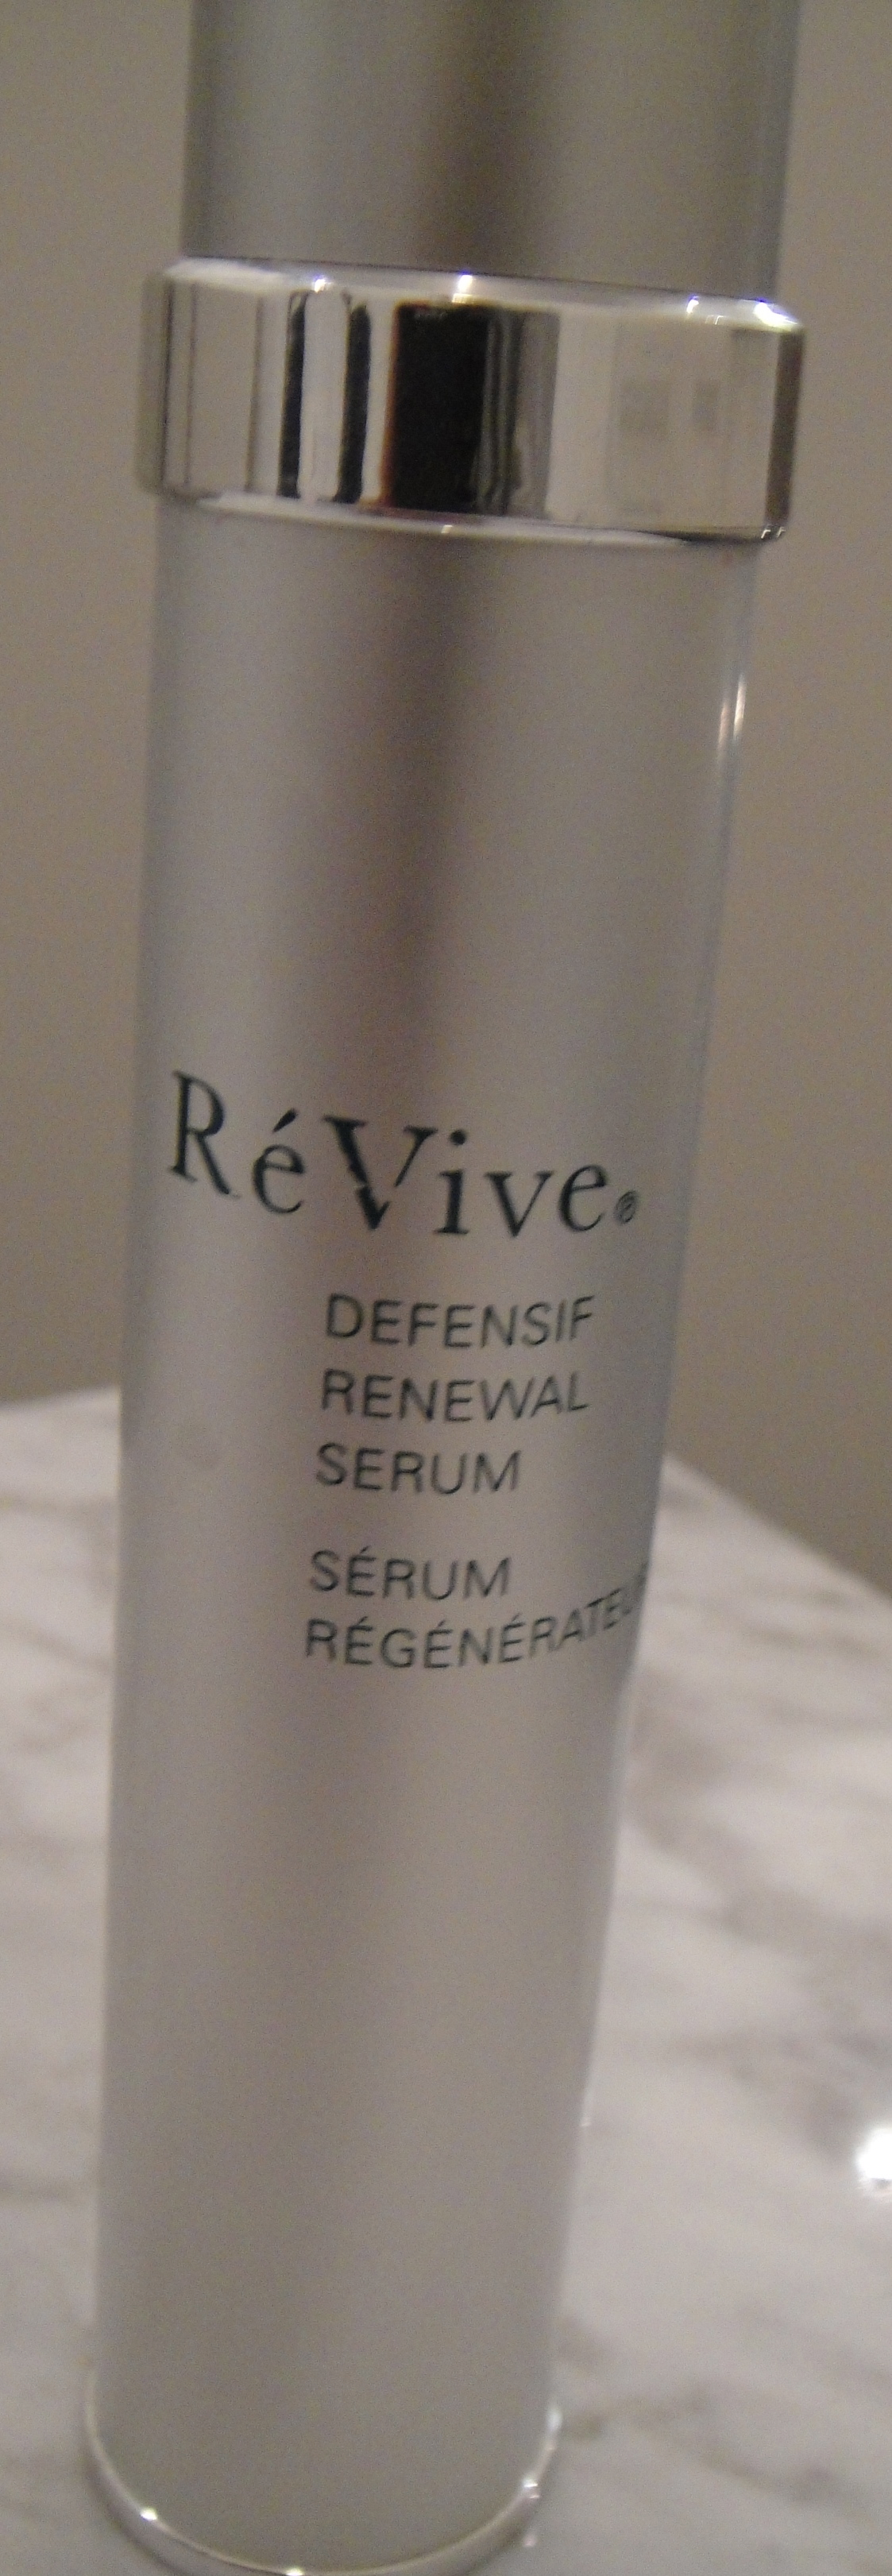 Face: Re Vive, Defensif Renewal Serum